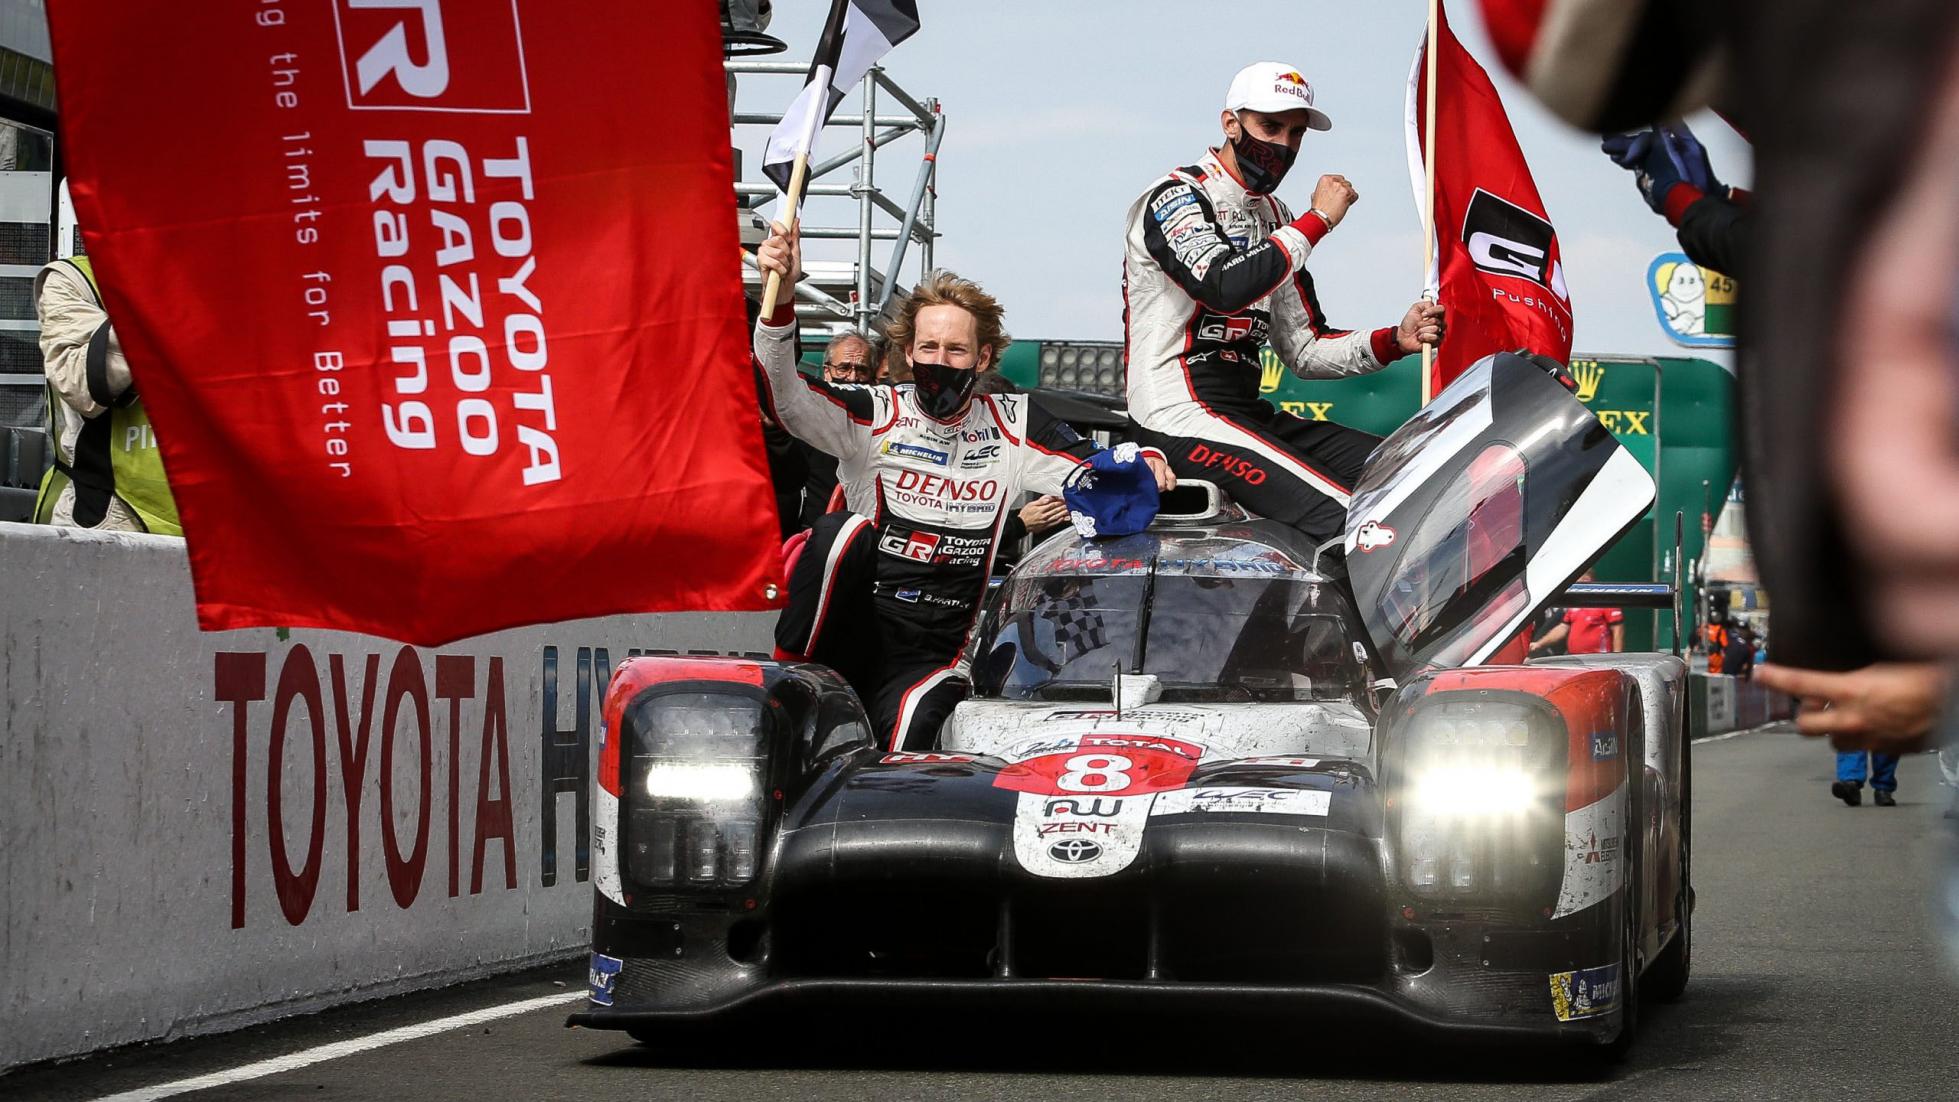 丰田汽车连续第三次赢得勒芒24小时耐力赛冠军